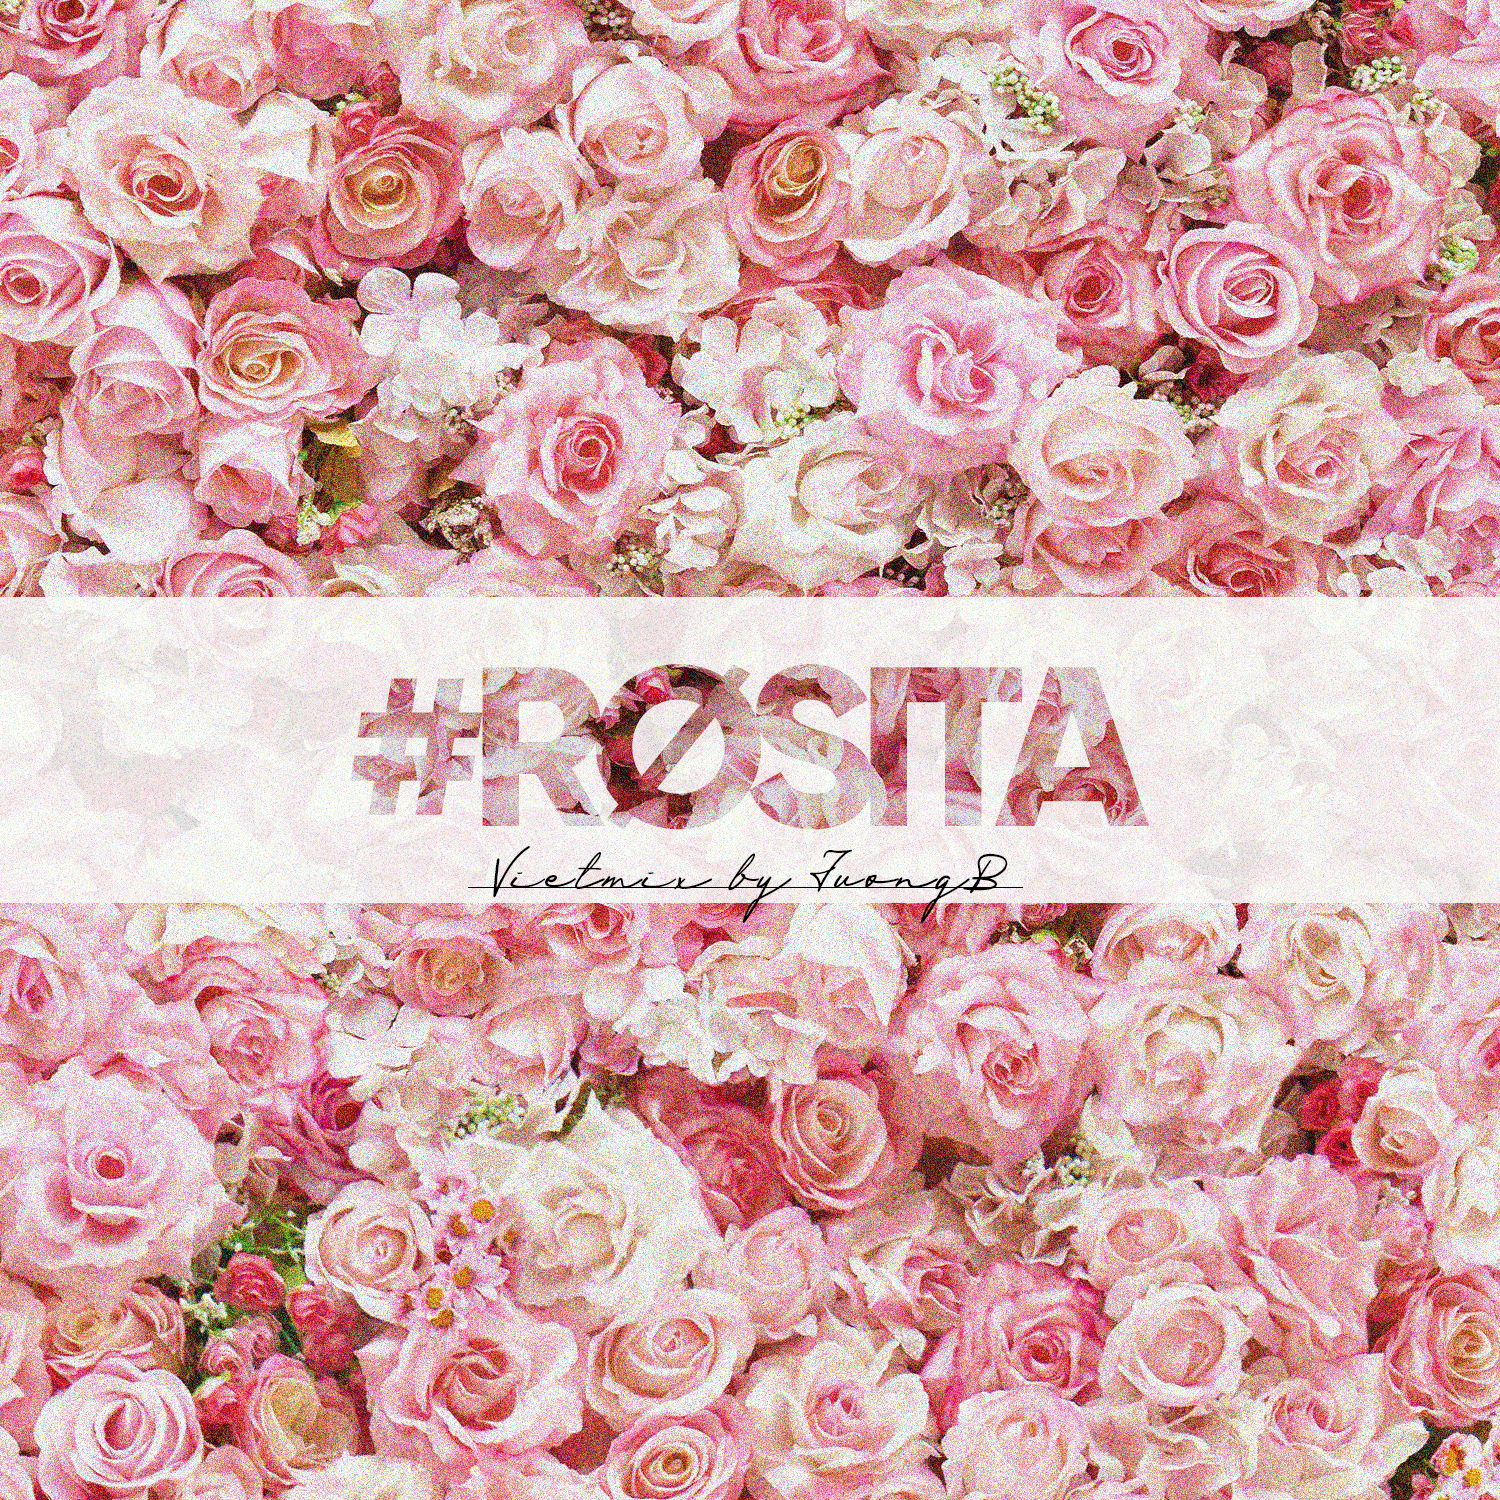 Преузимање #Rosita - Vietmix By JuongB